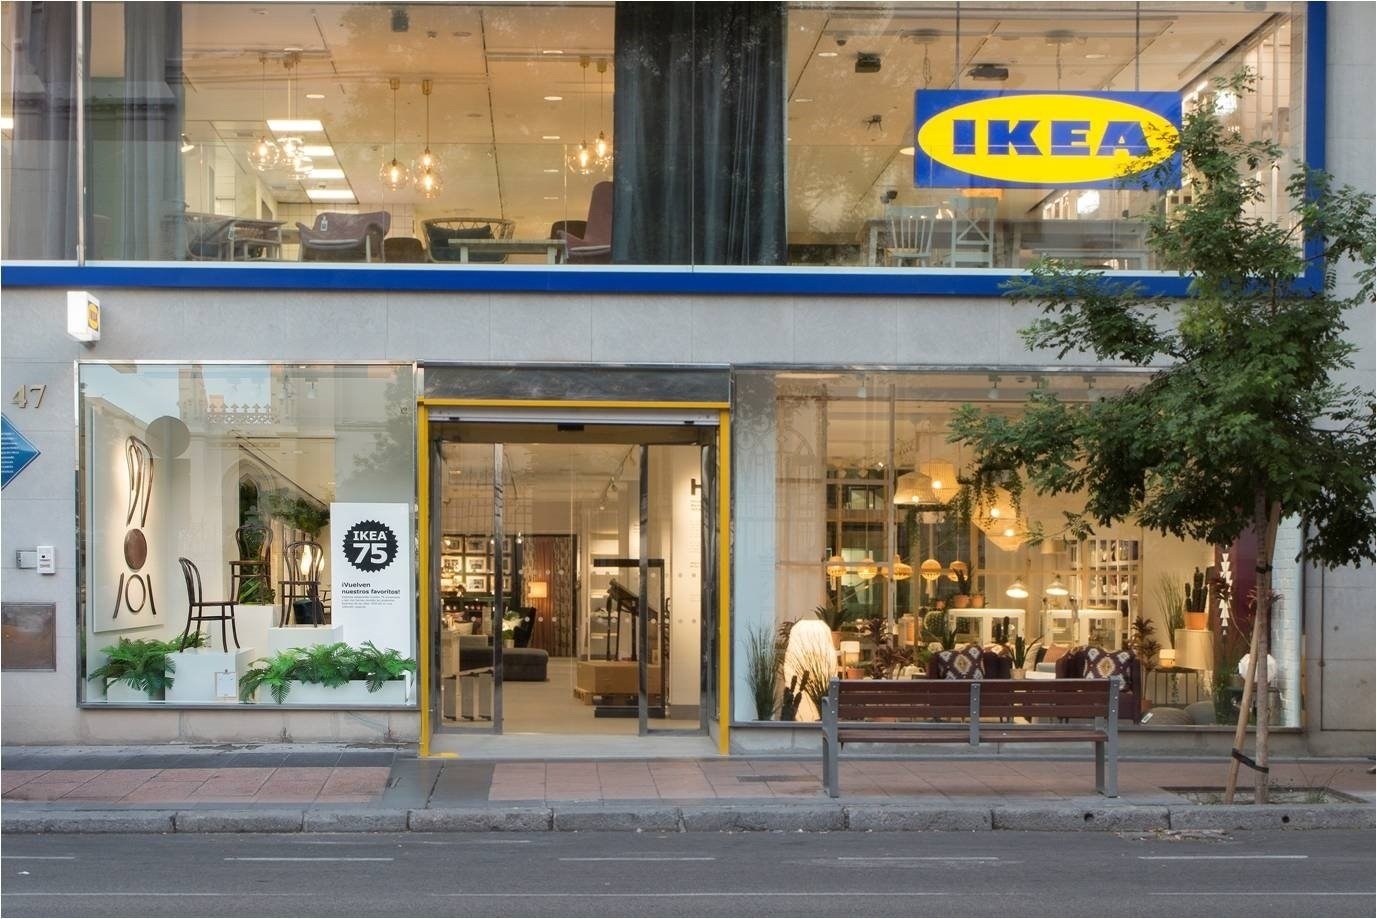 Ikea obrirà 12 botigues i contractarà 340 persones a Catalunya